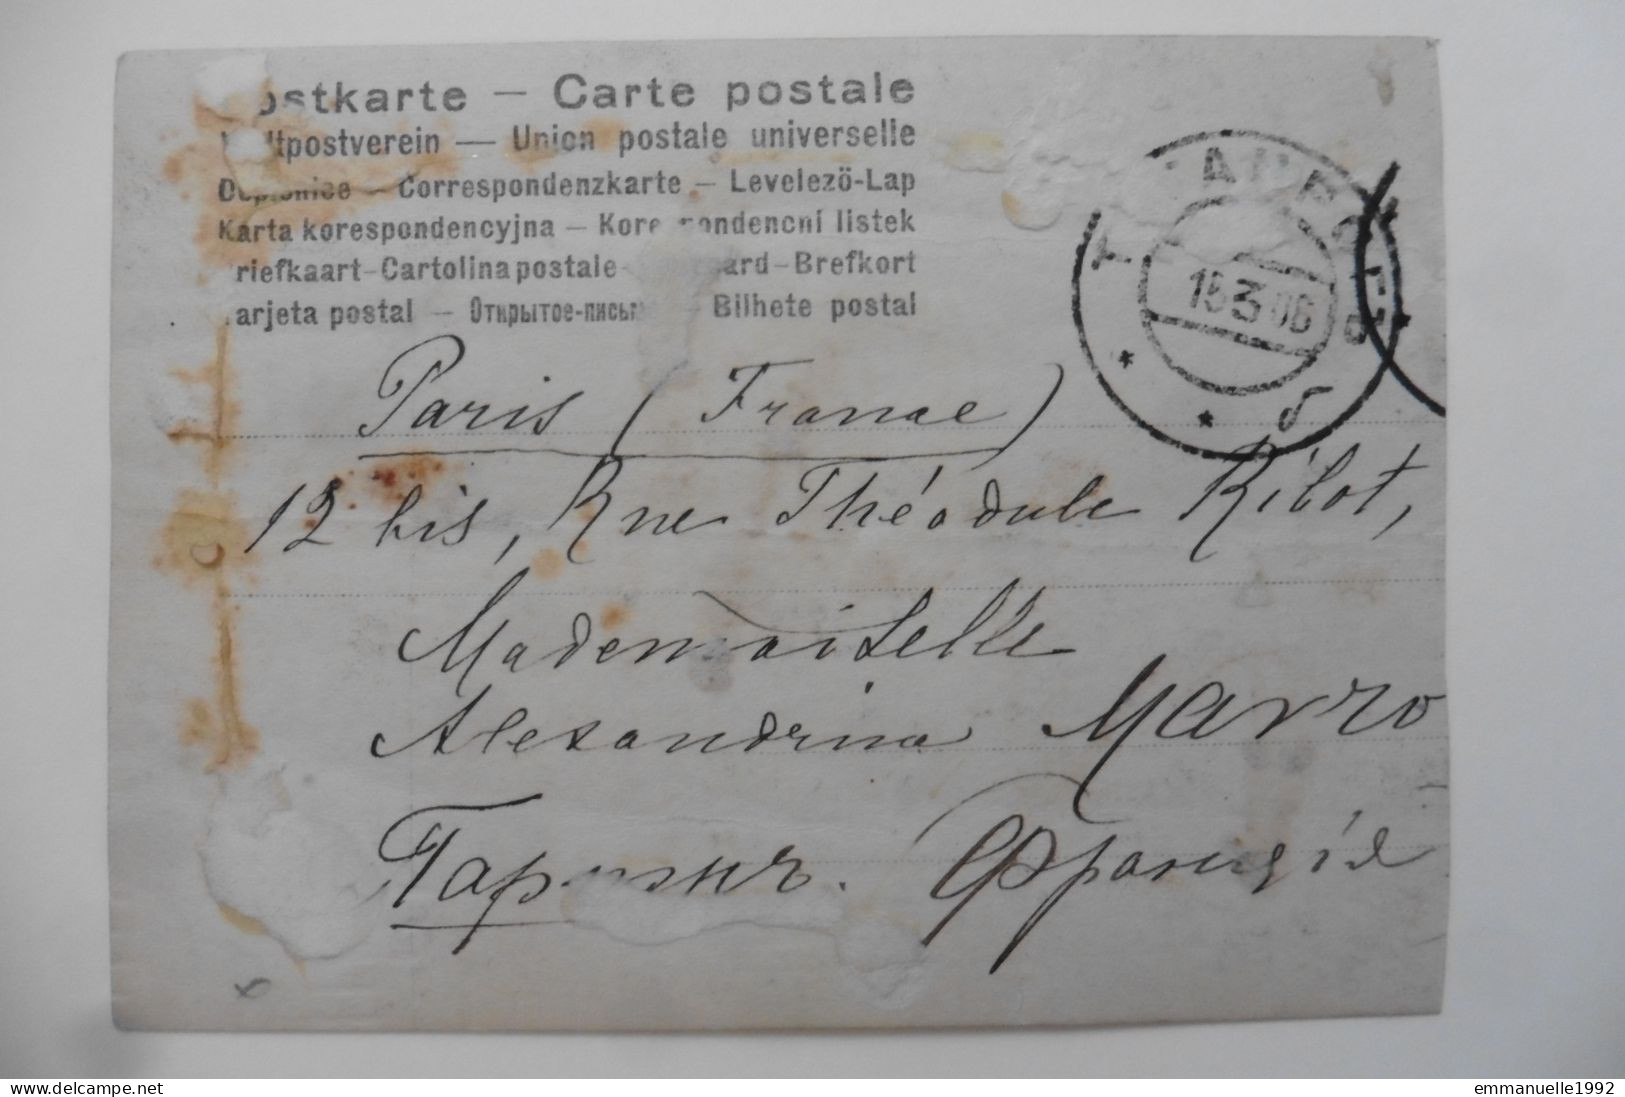 Autographe Carte Postale Photo écrite Et Signée Par Le Chanteur Russe Feodor Chaliapine En 1906 - Sänger Und Musiker